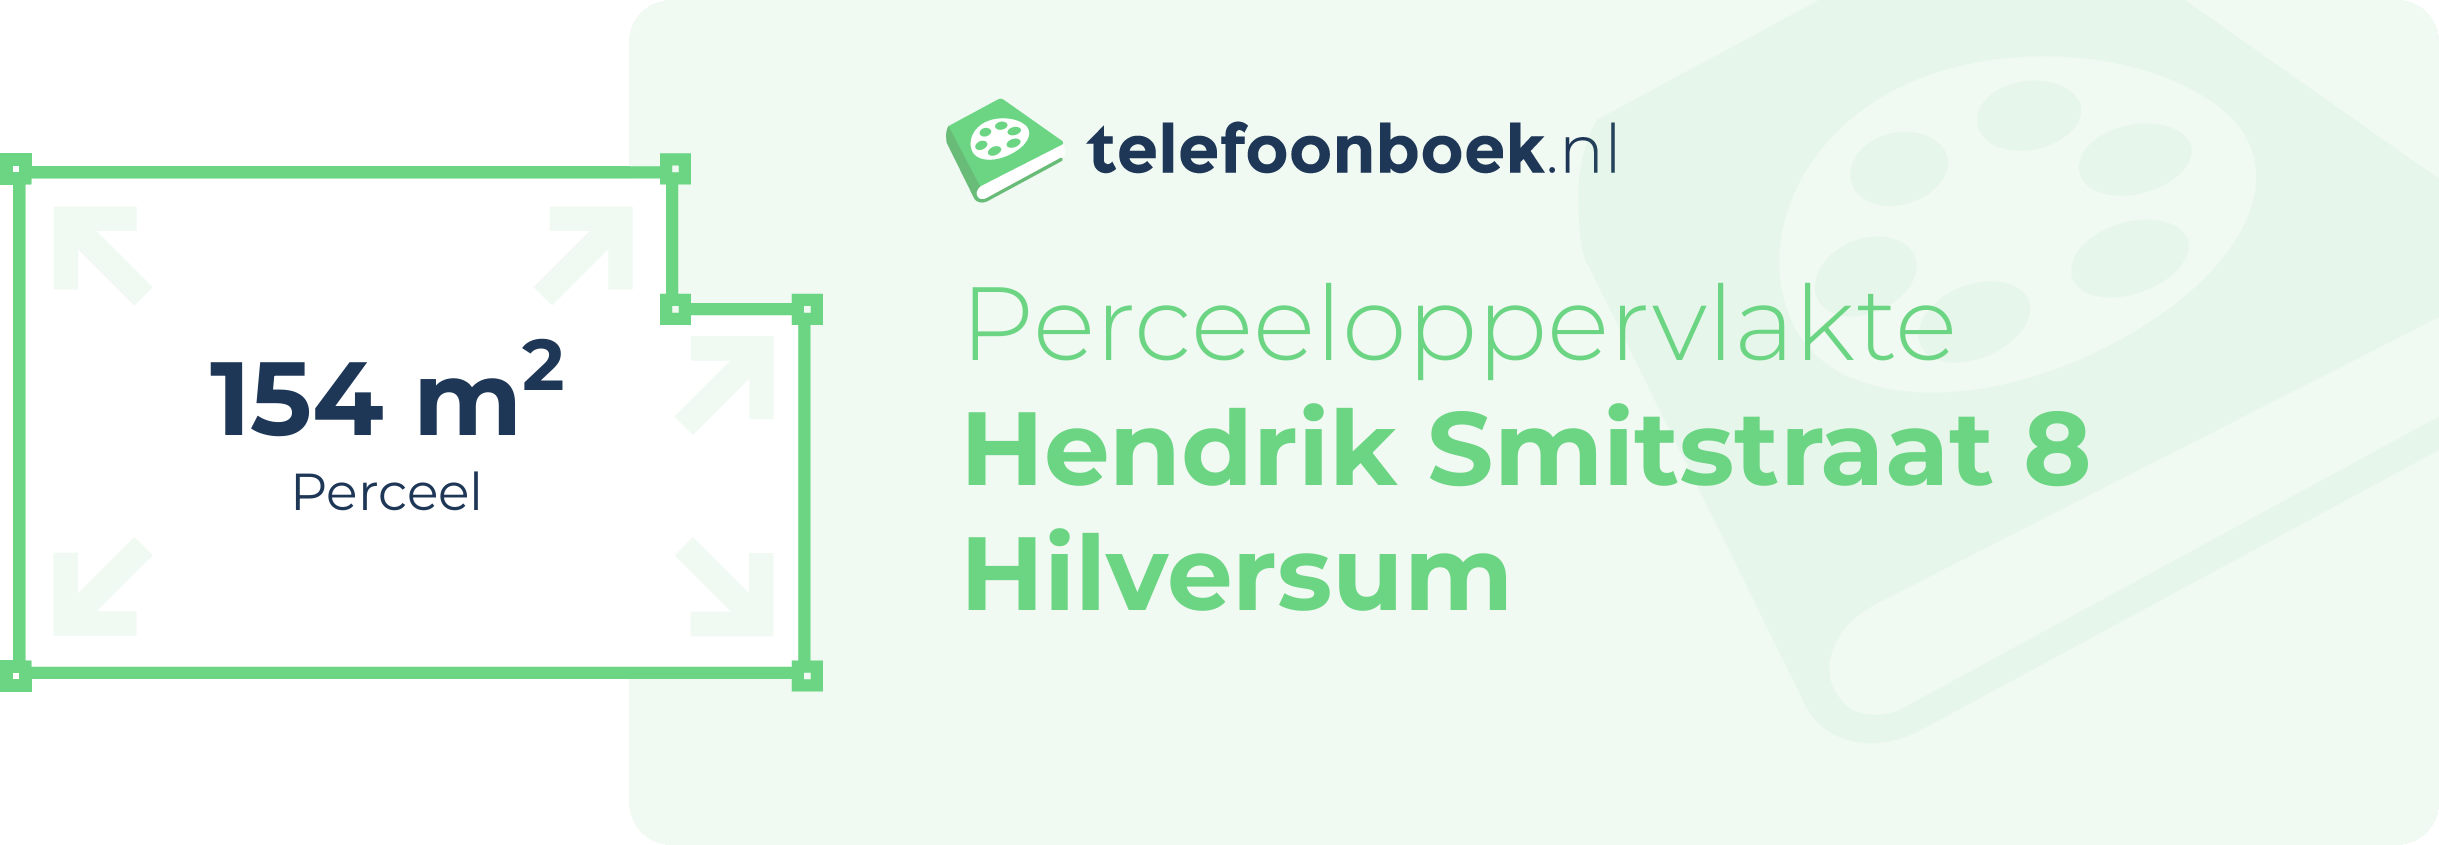 Perceeloppervlakte Hendrik Smitstraat 8 Hilversum